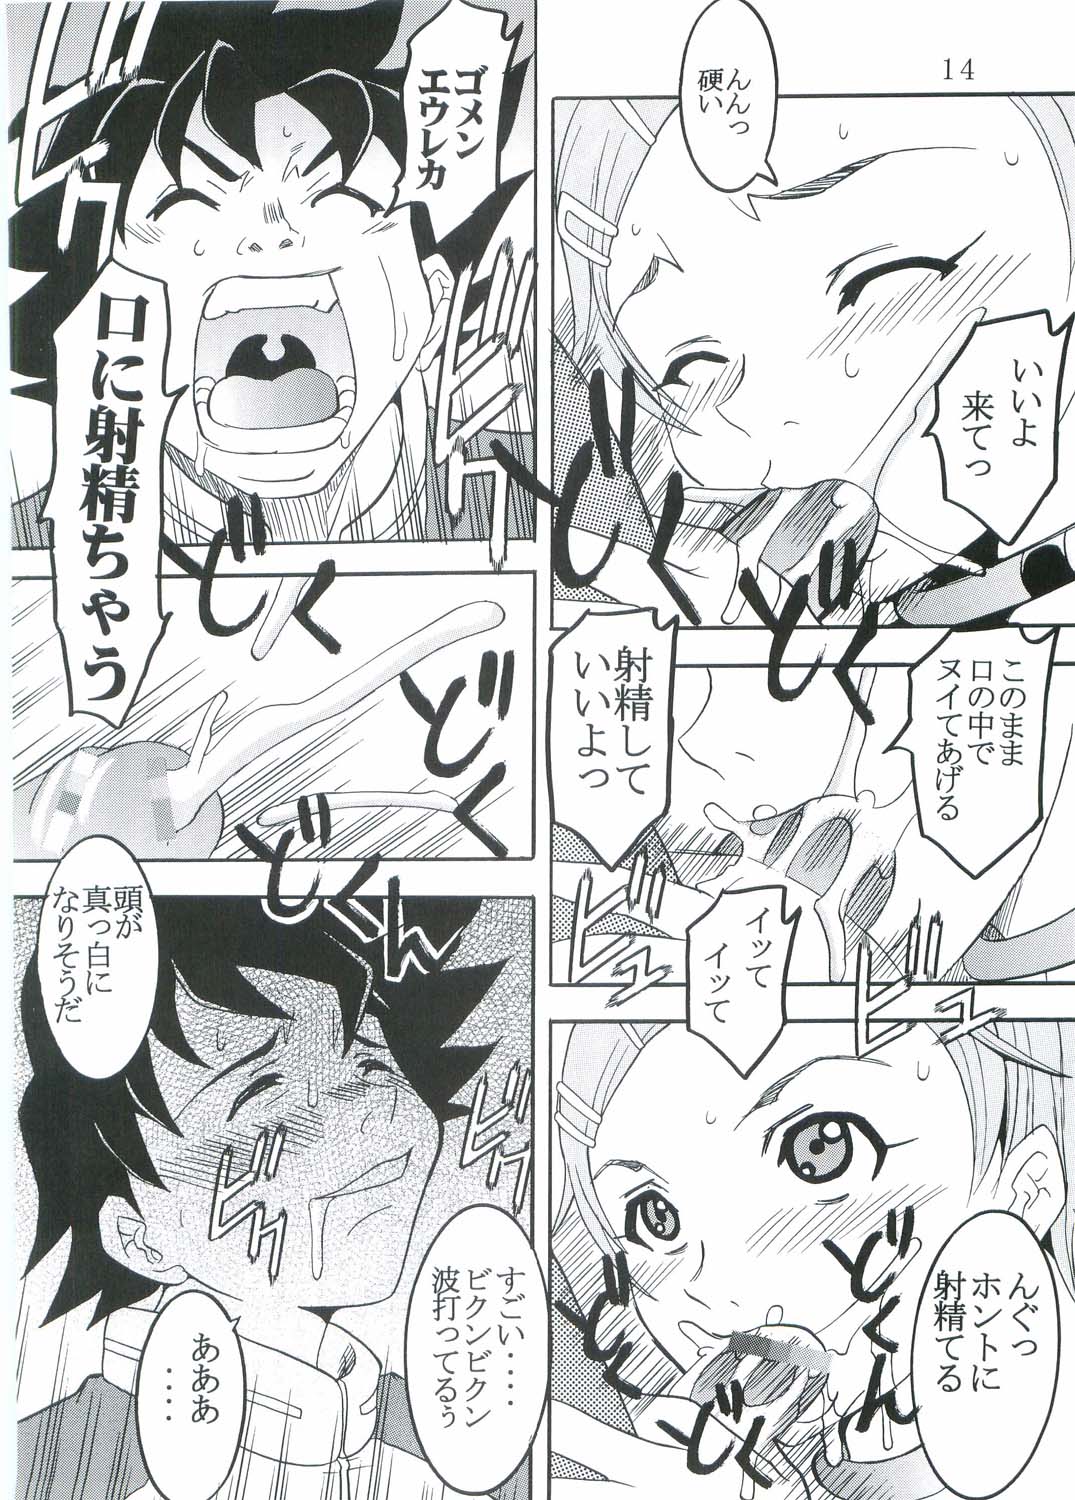 [St. Rio (Kitty, Kouenji Rei)] Ura ray-out (Eureka seveN) page 15 full